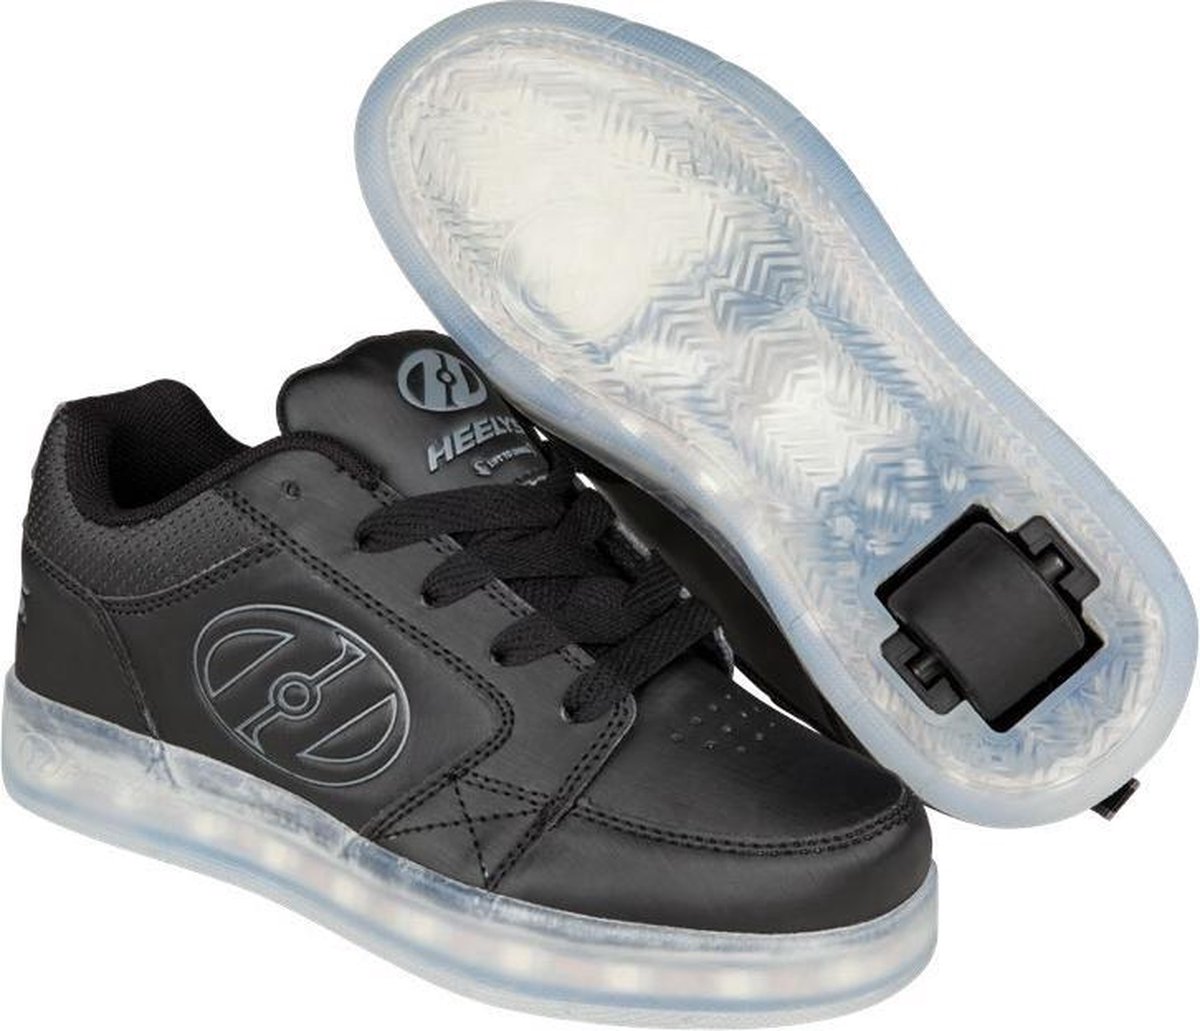 Heelys Rolschoenen Premium Lo - Sneakers - Kinderen - LED lichtjes -  Oplaadbaar - Maat... | bol.com